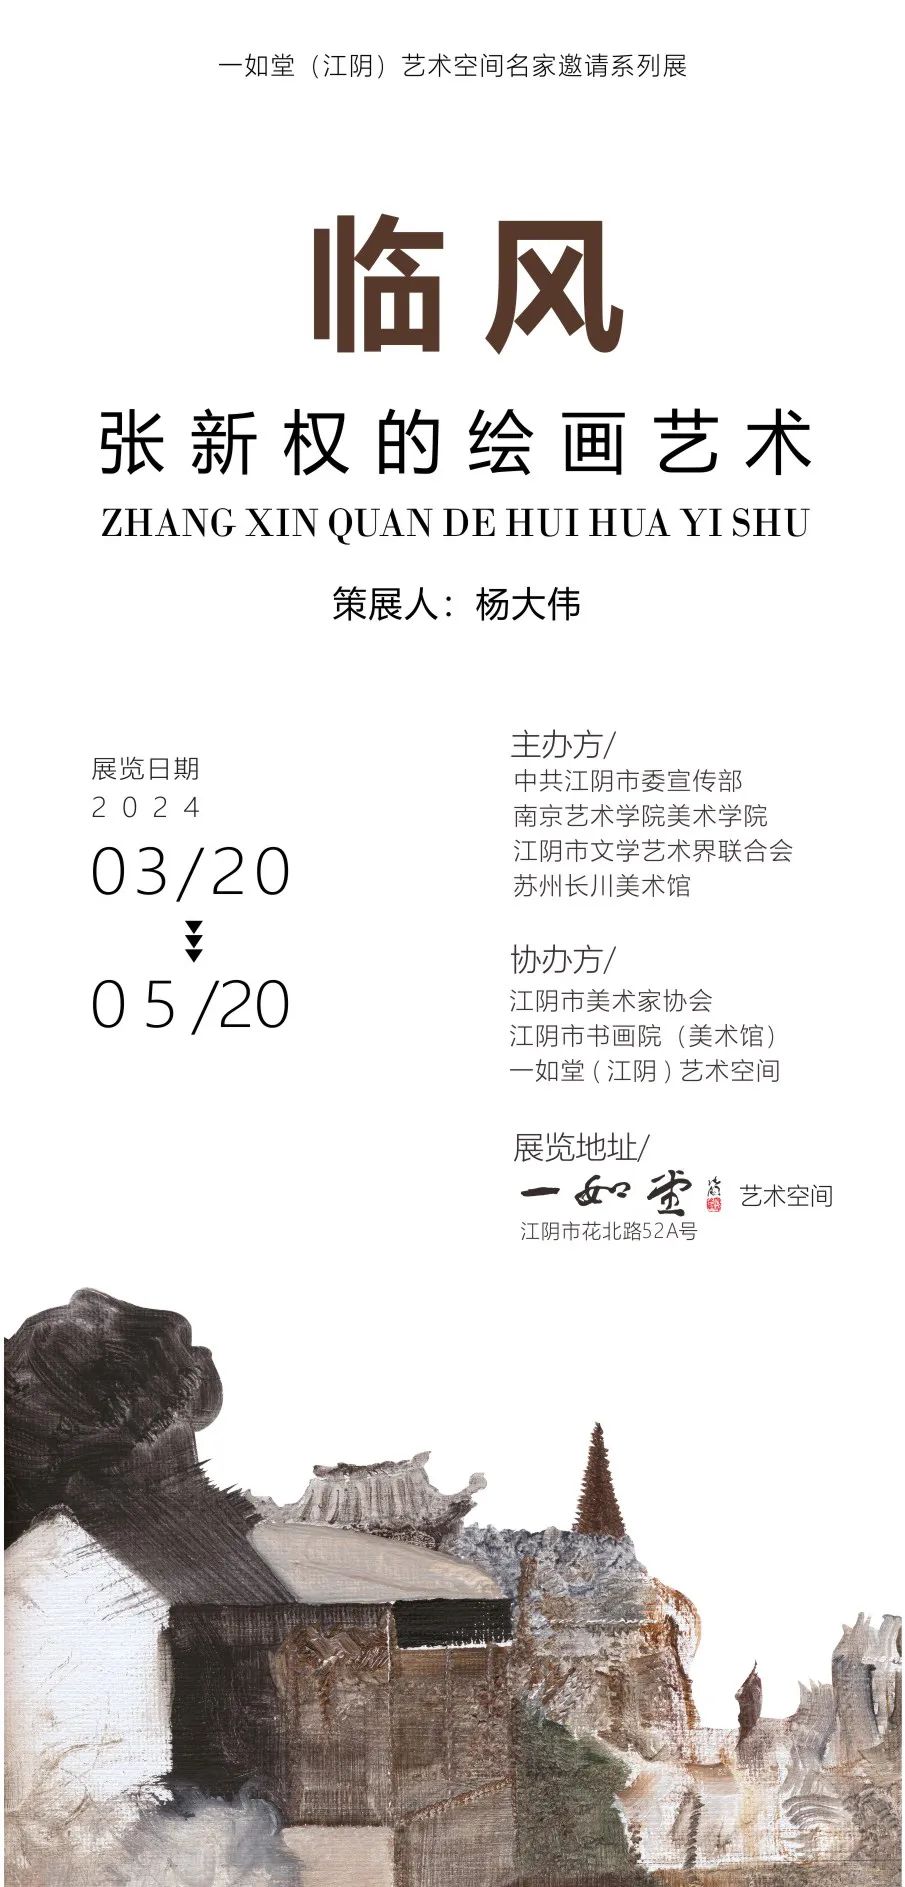 “临风——张新权的绘画艺术”将于3月20日-5月20日在江苏无锡举办